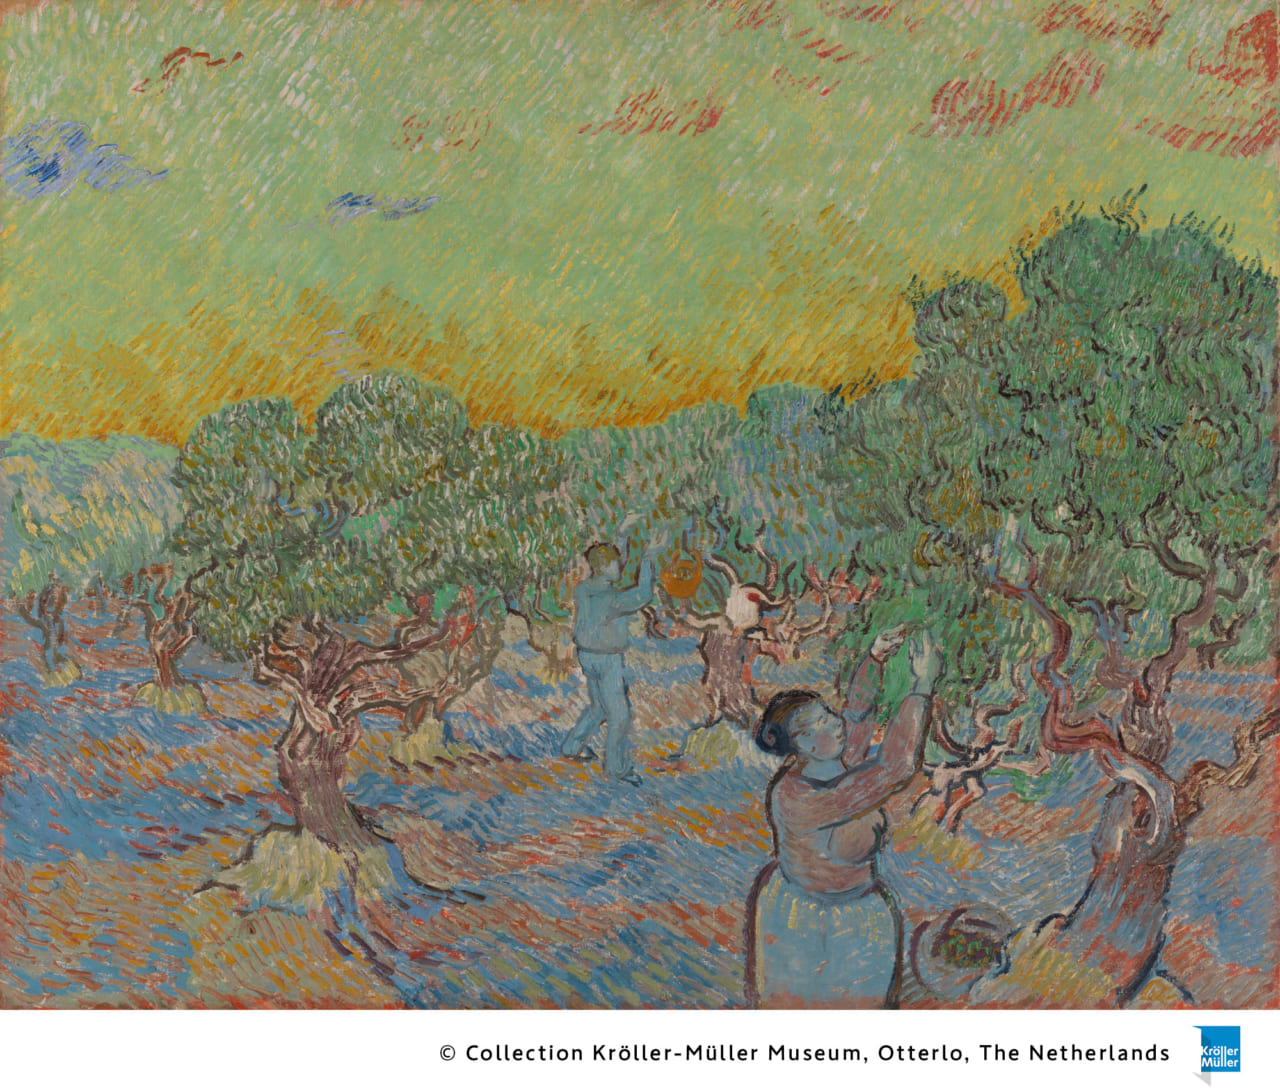 フィンセント・ファン・ゴッホ　《オリーヴを摘む人々》　
1889年12月
油彩、カンヴァス
73.3×92.2cm
クレラー=ミュラー美術館